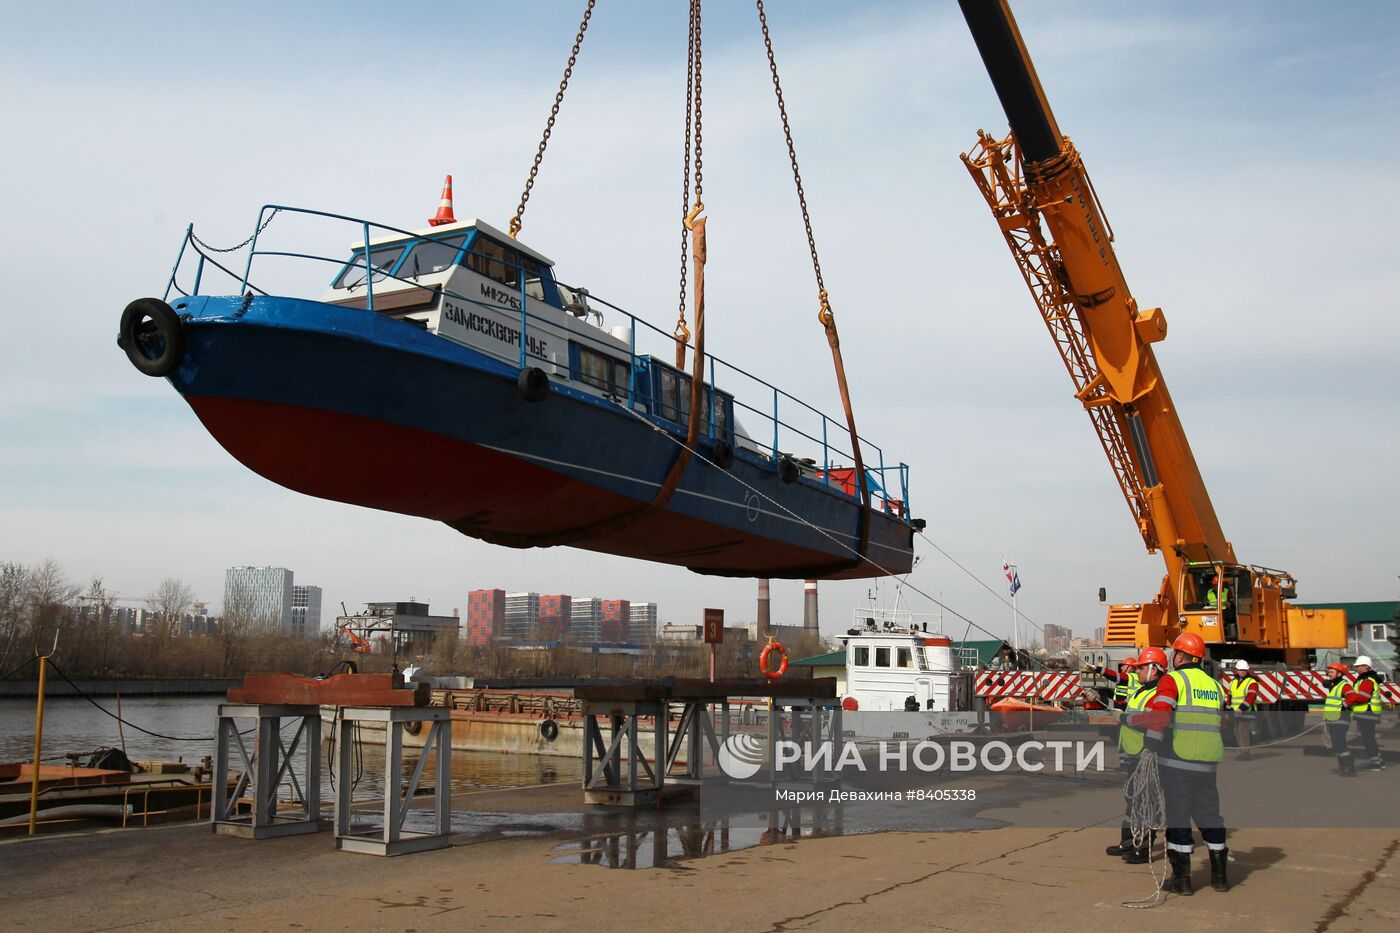 Подготовка коммунального флота Москвы к сезону речной технической навигации